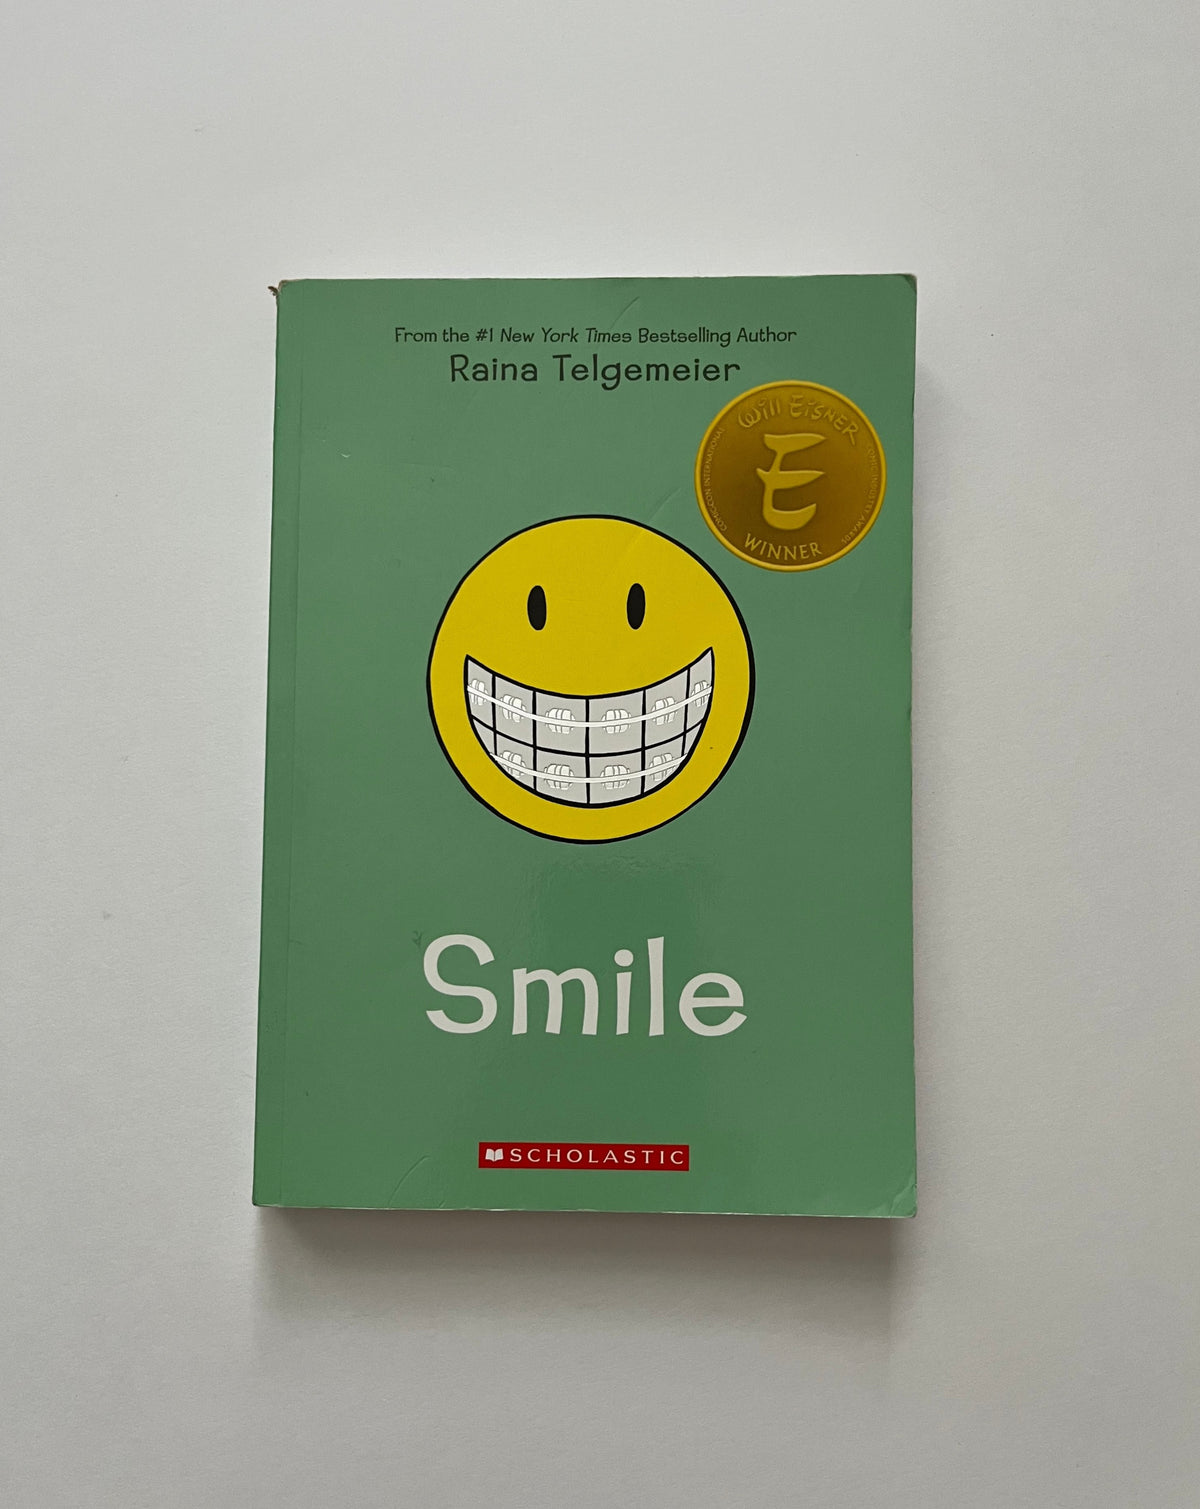 Smile by Raina Telgemeier